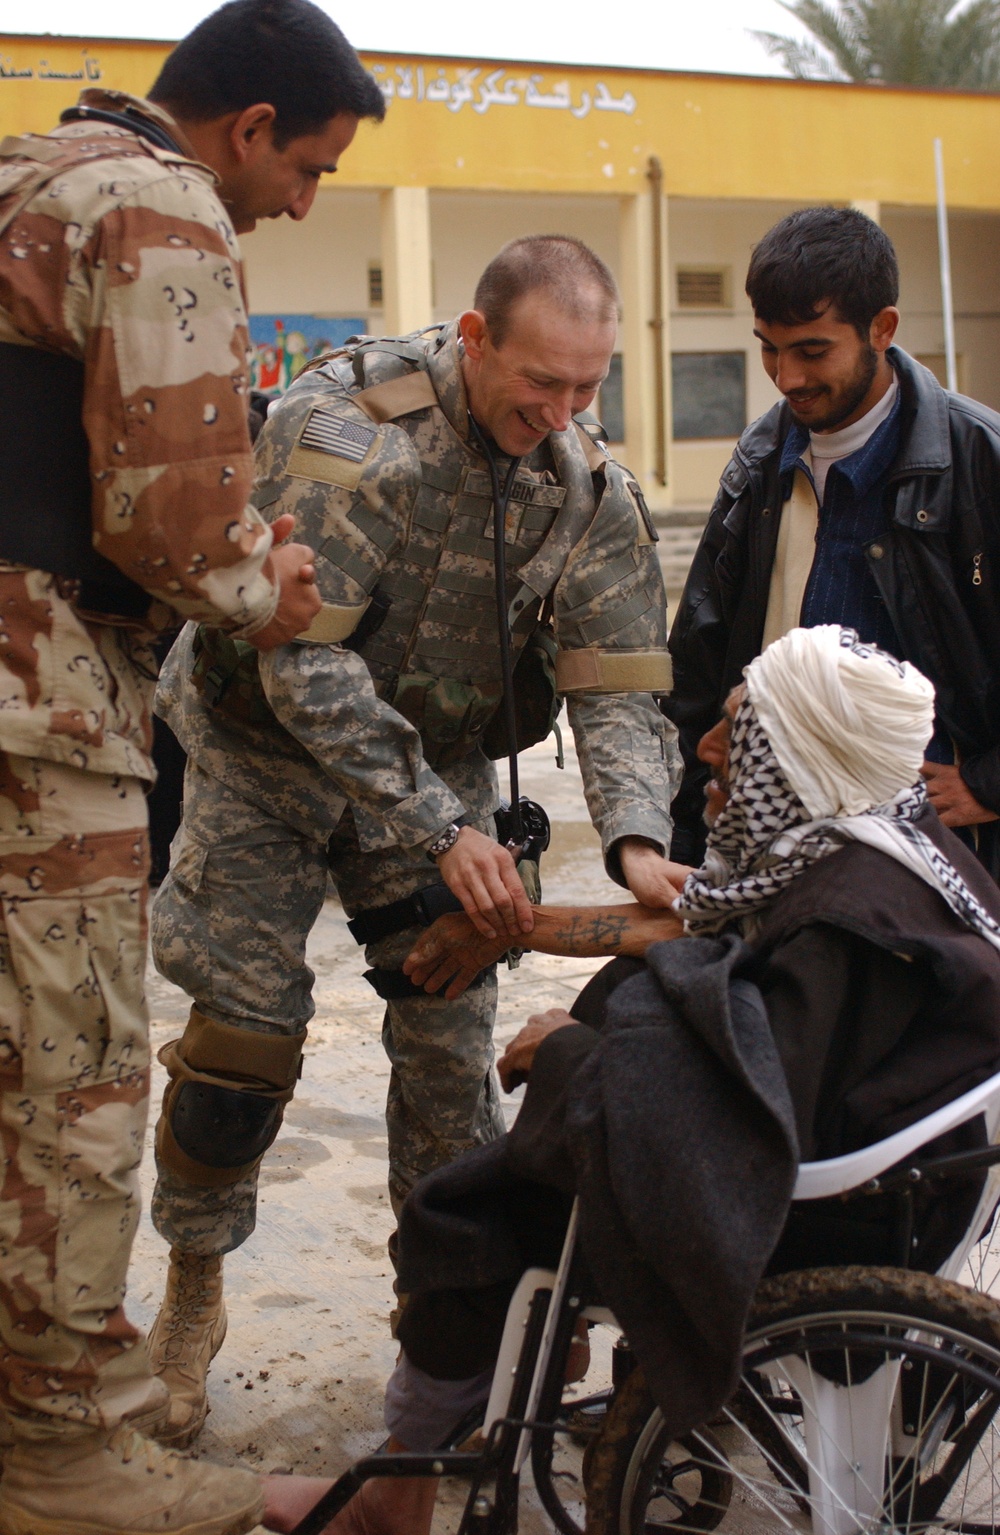 Seeing Patients in Abu Ghraib